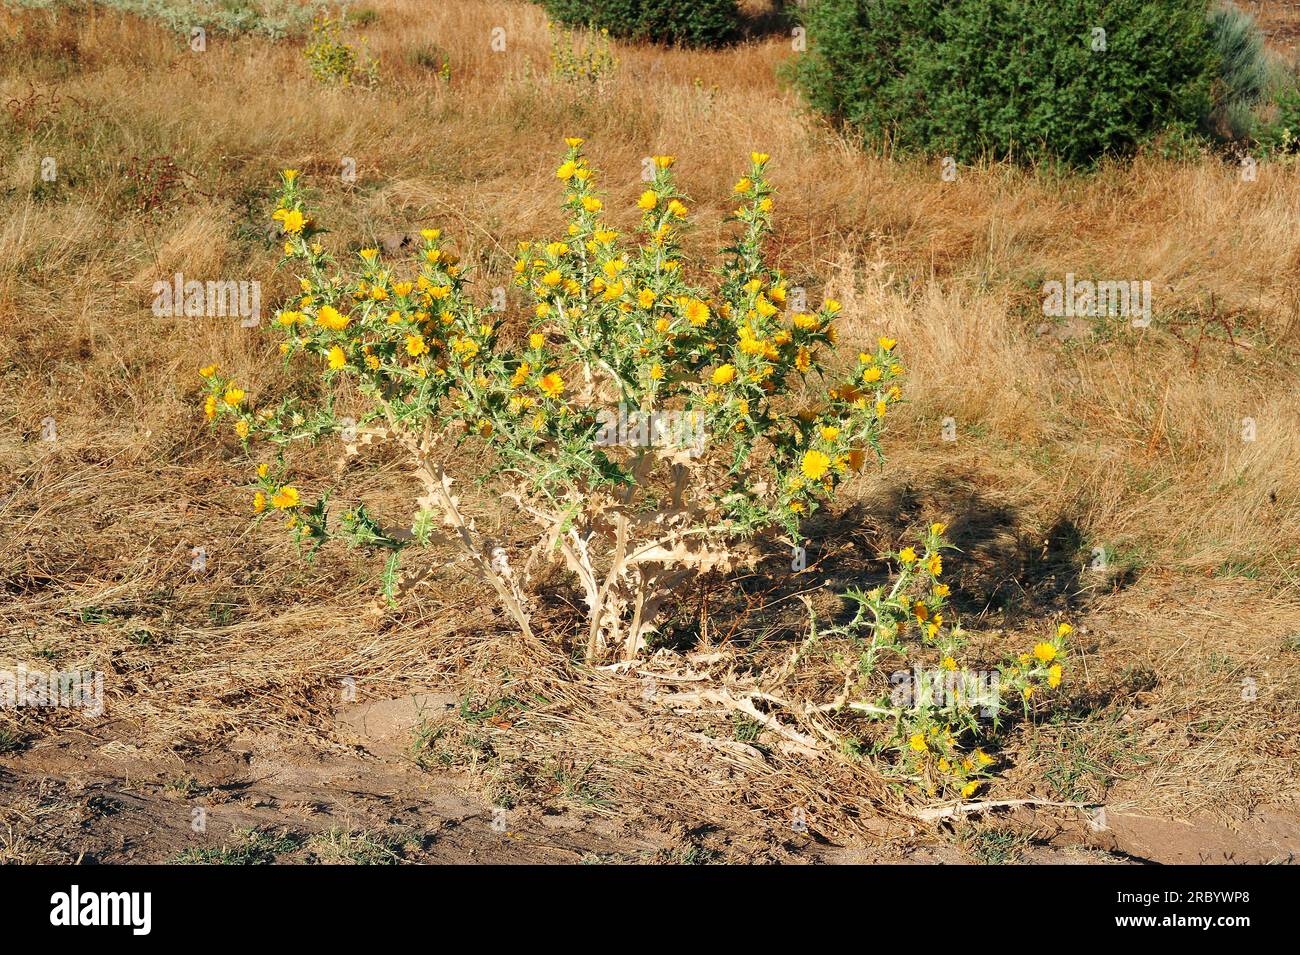 Die spanische Austerndistel (Scolymus hispanicus) ist eine essbare zweijährige Pflanze, die in Süd- und Westeuropa heimisch ist. Angiospermen. Asteraceae. Dieses Foto war Stockfoto